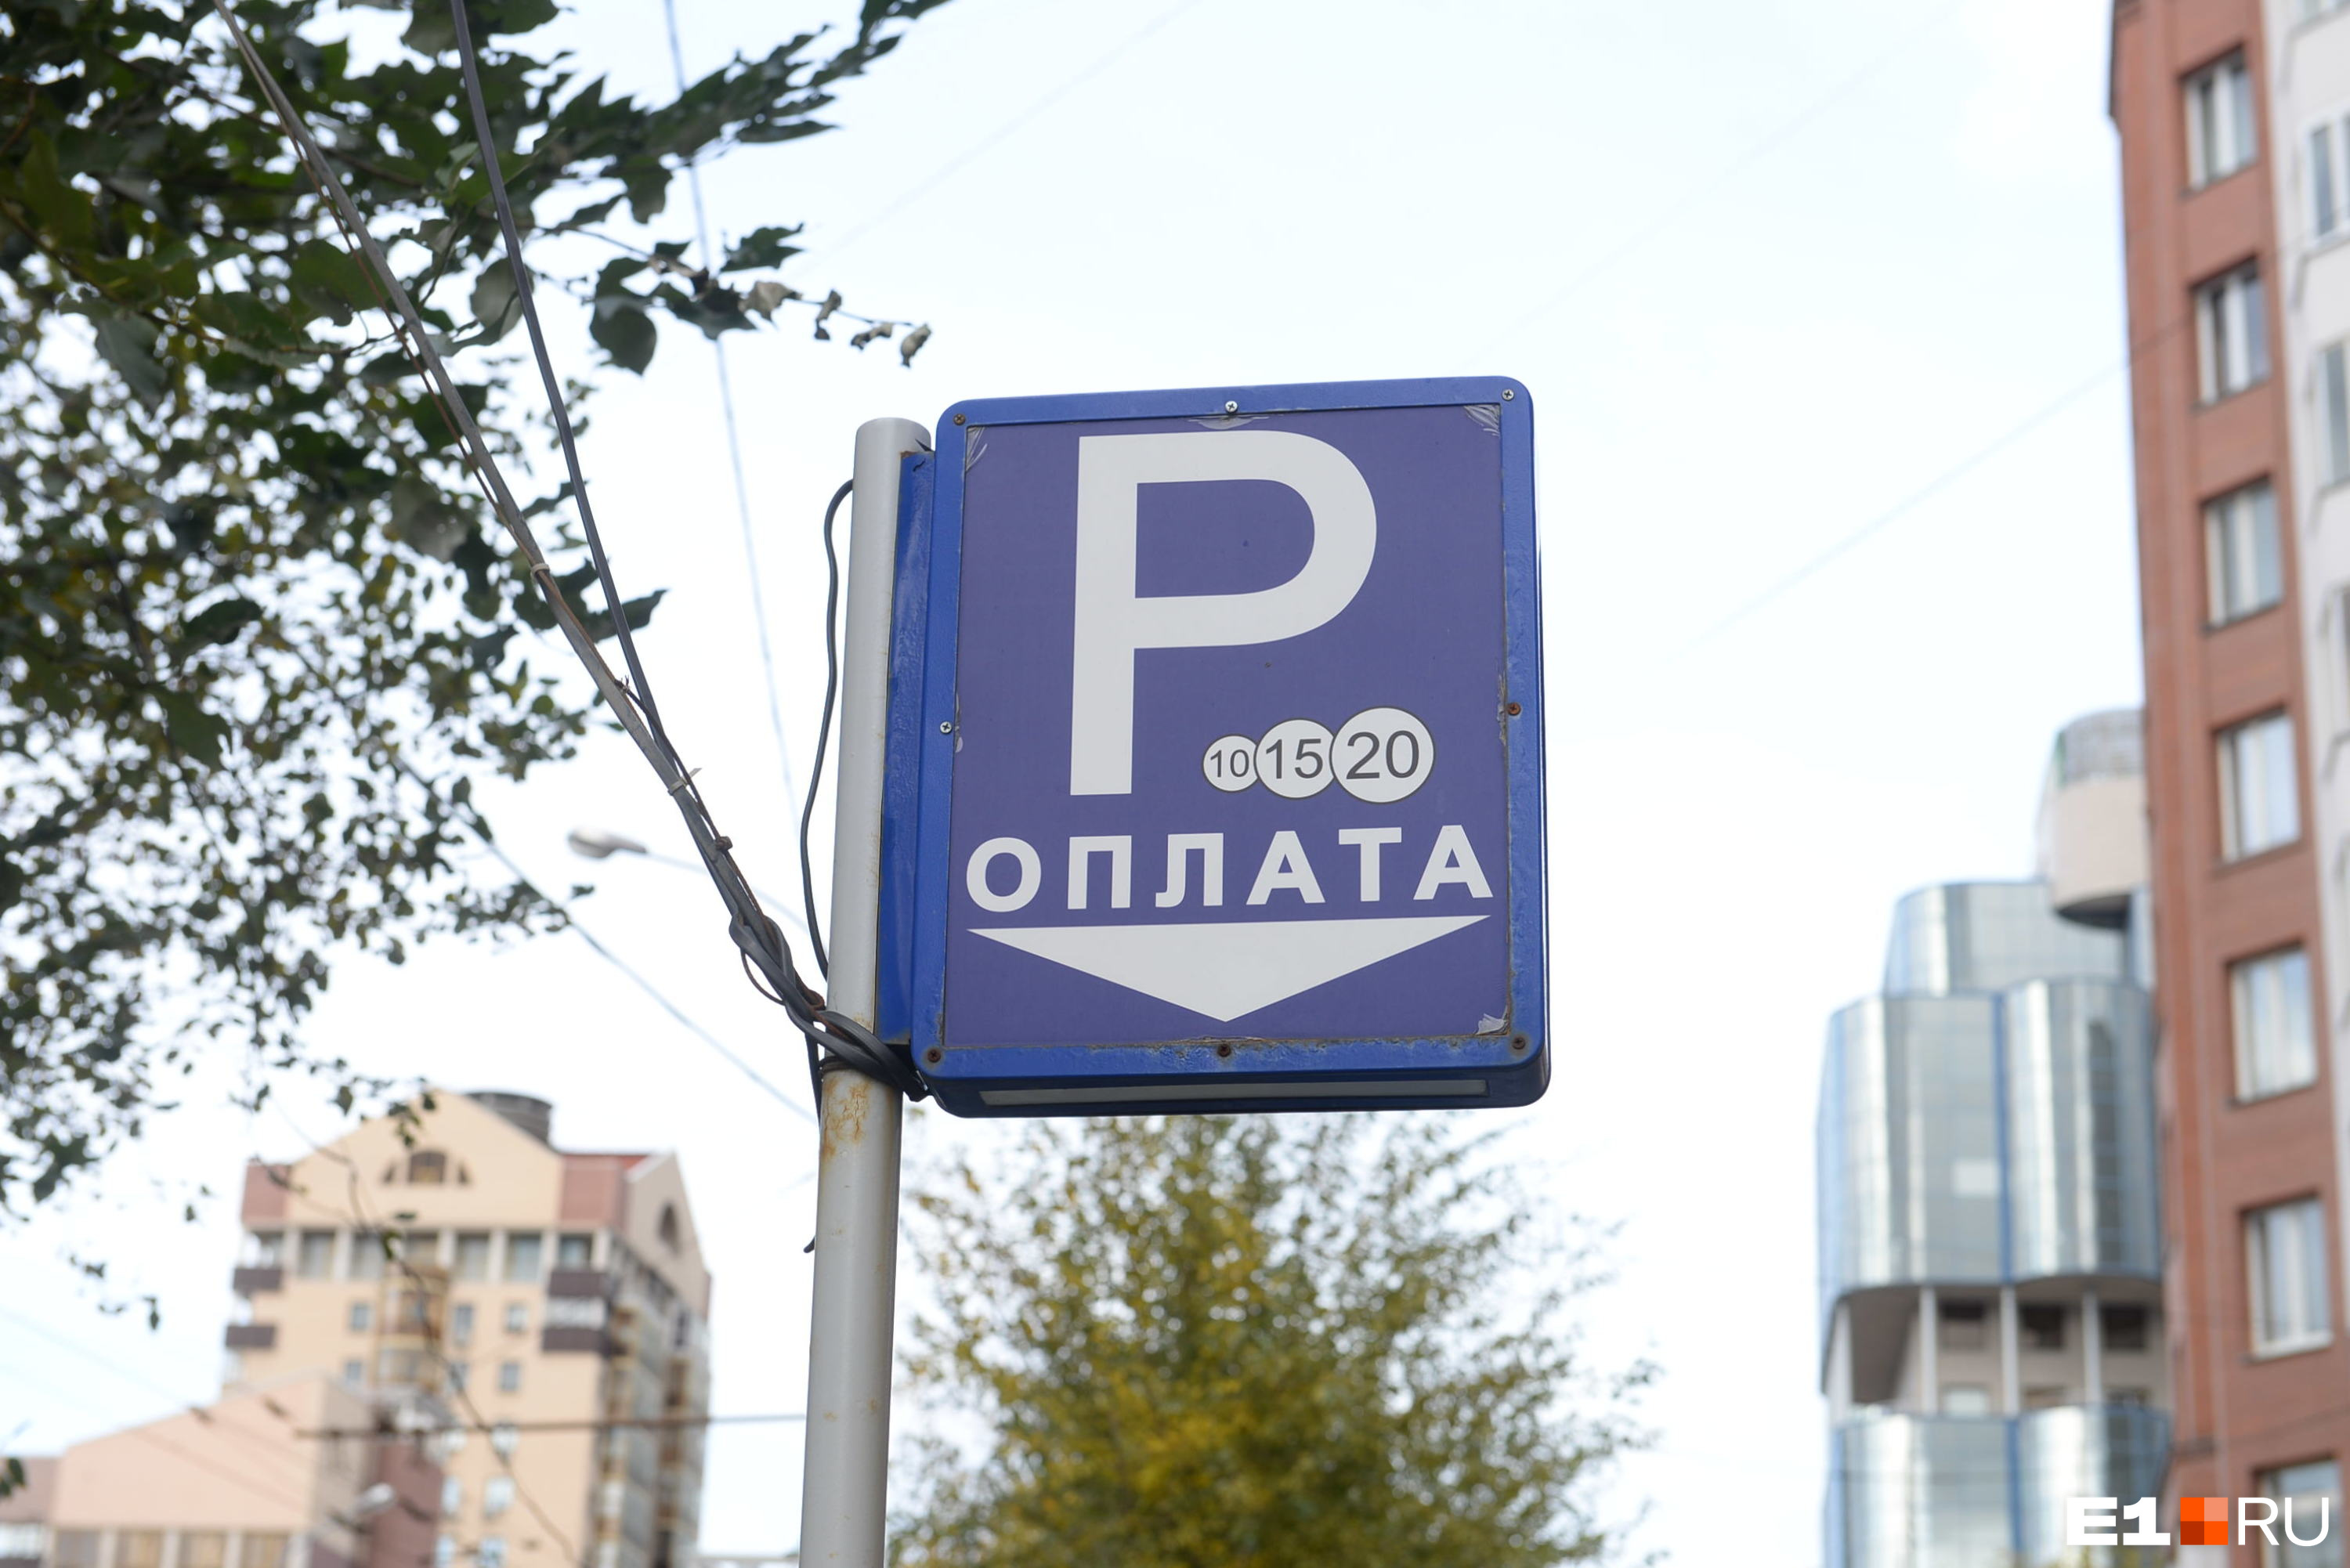 В Екатеринбурге стало меньше платных парковок. Публикуем карту